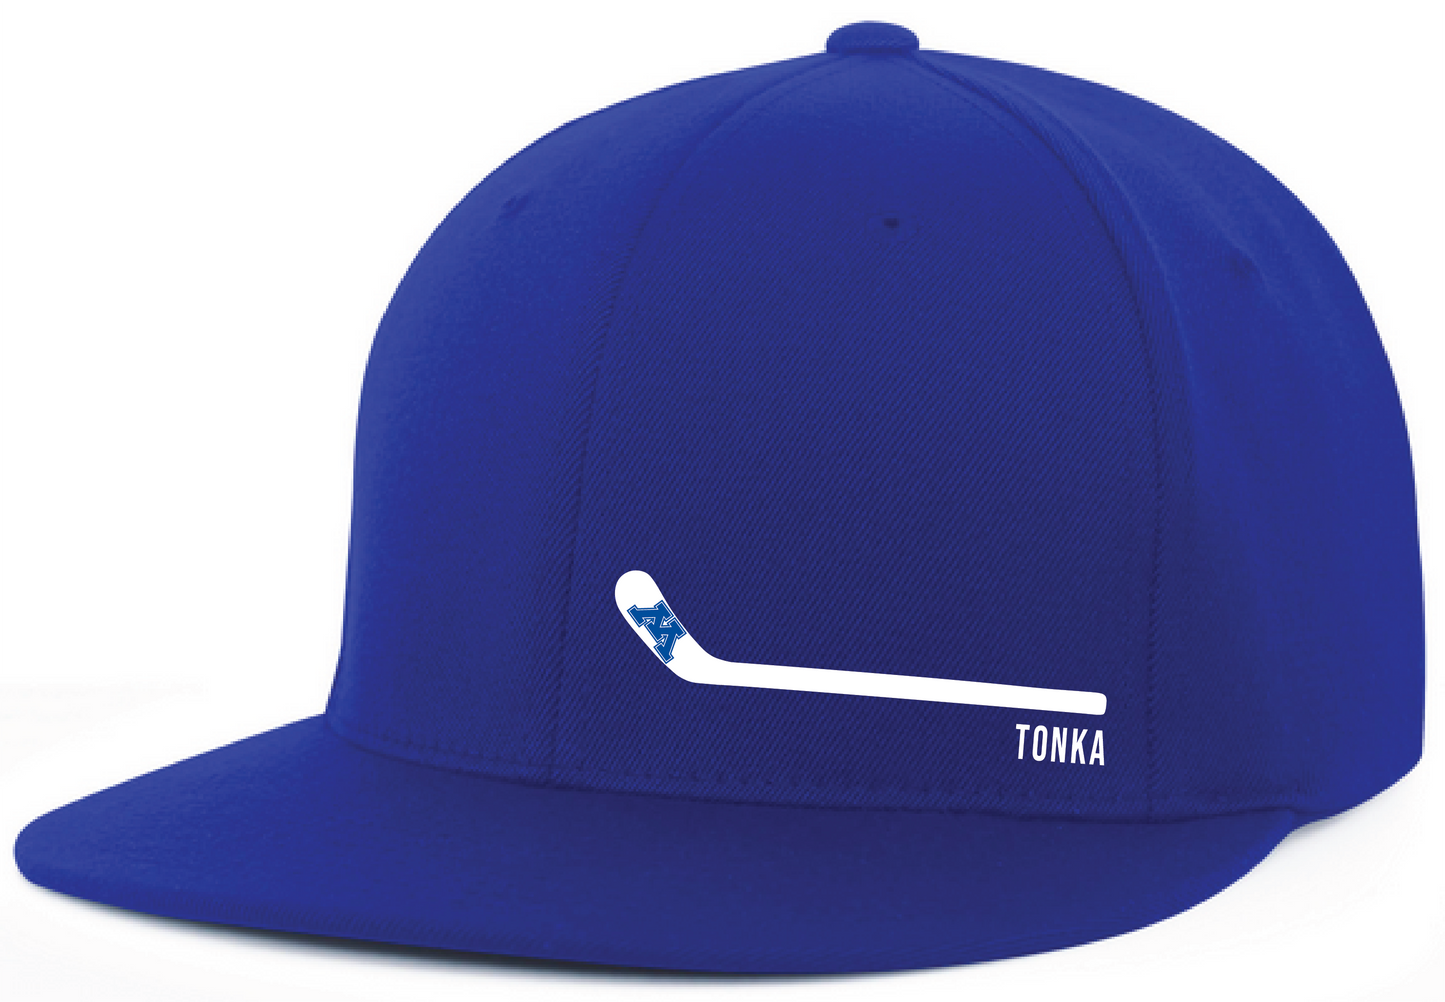 Tonka Hockey Stick Royal